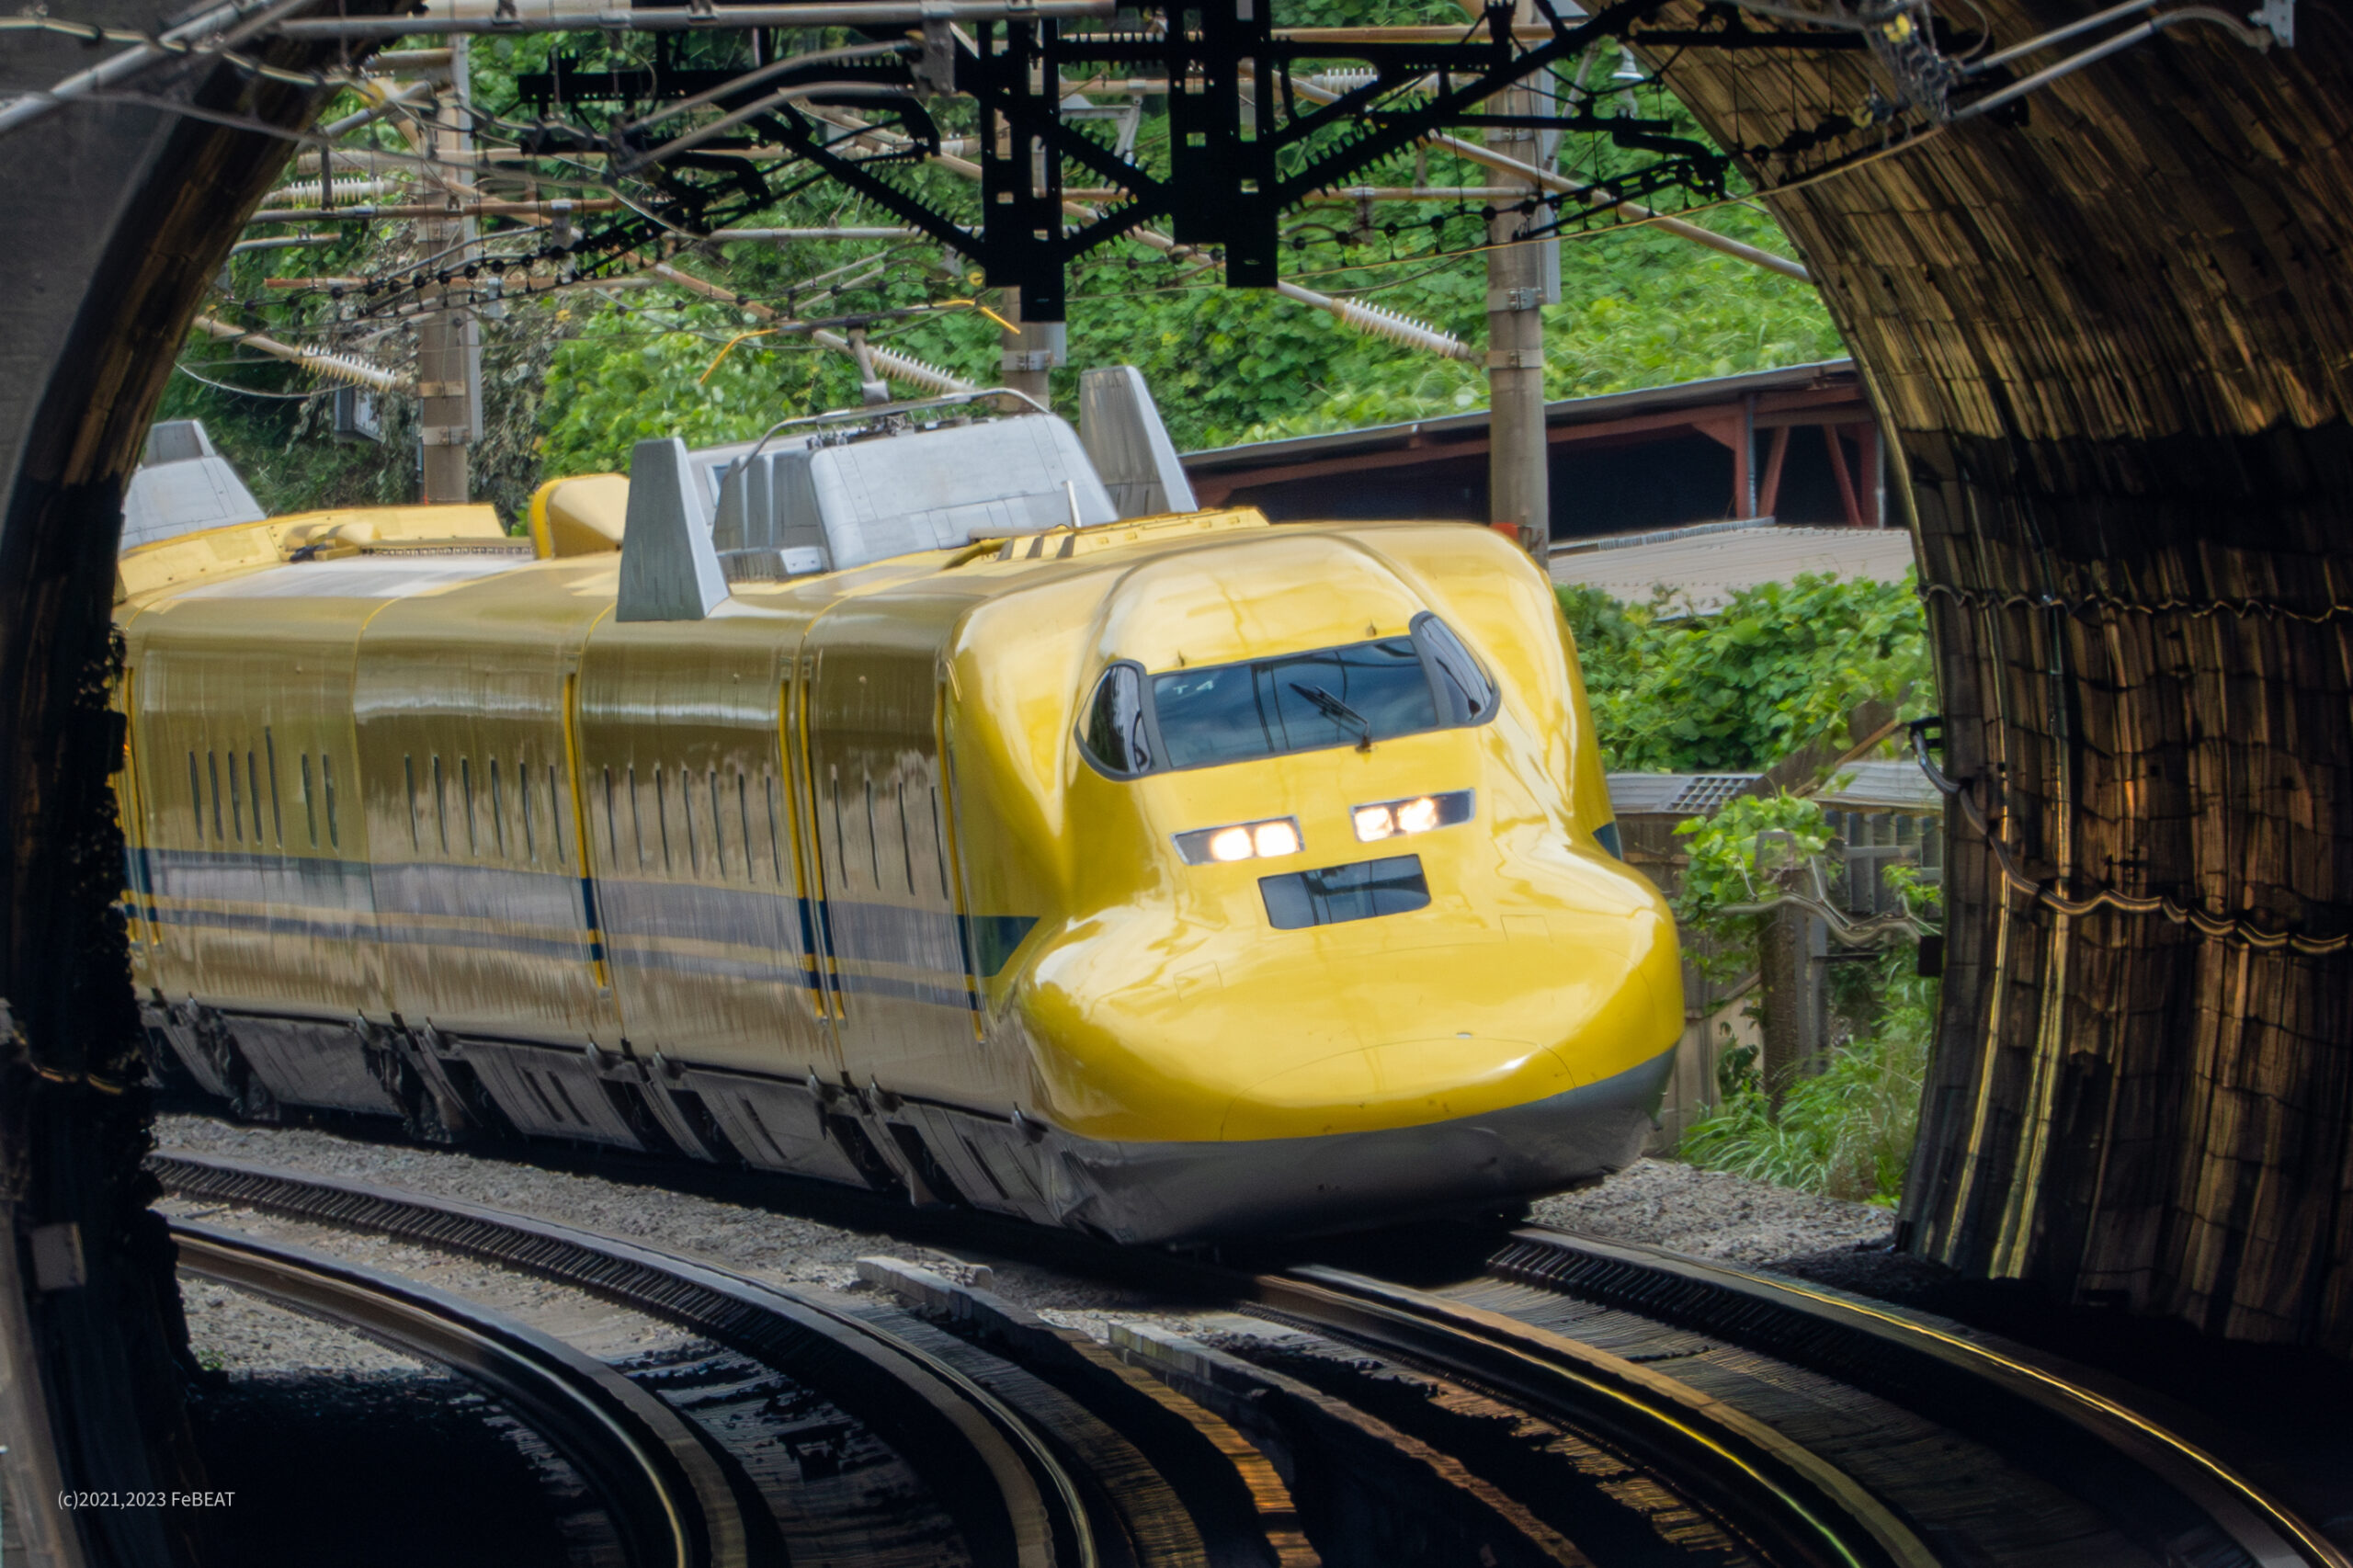 東海道新幹線 夏の風景 – イエローが抜けるトンネル | いろどりの鉄道 